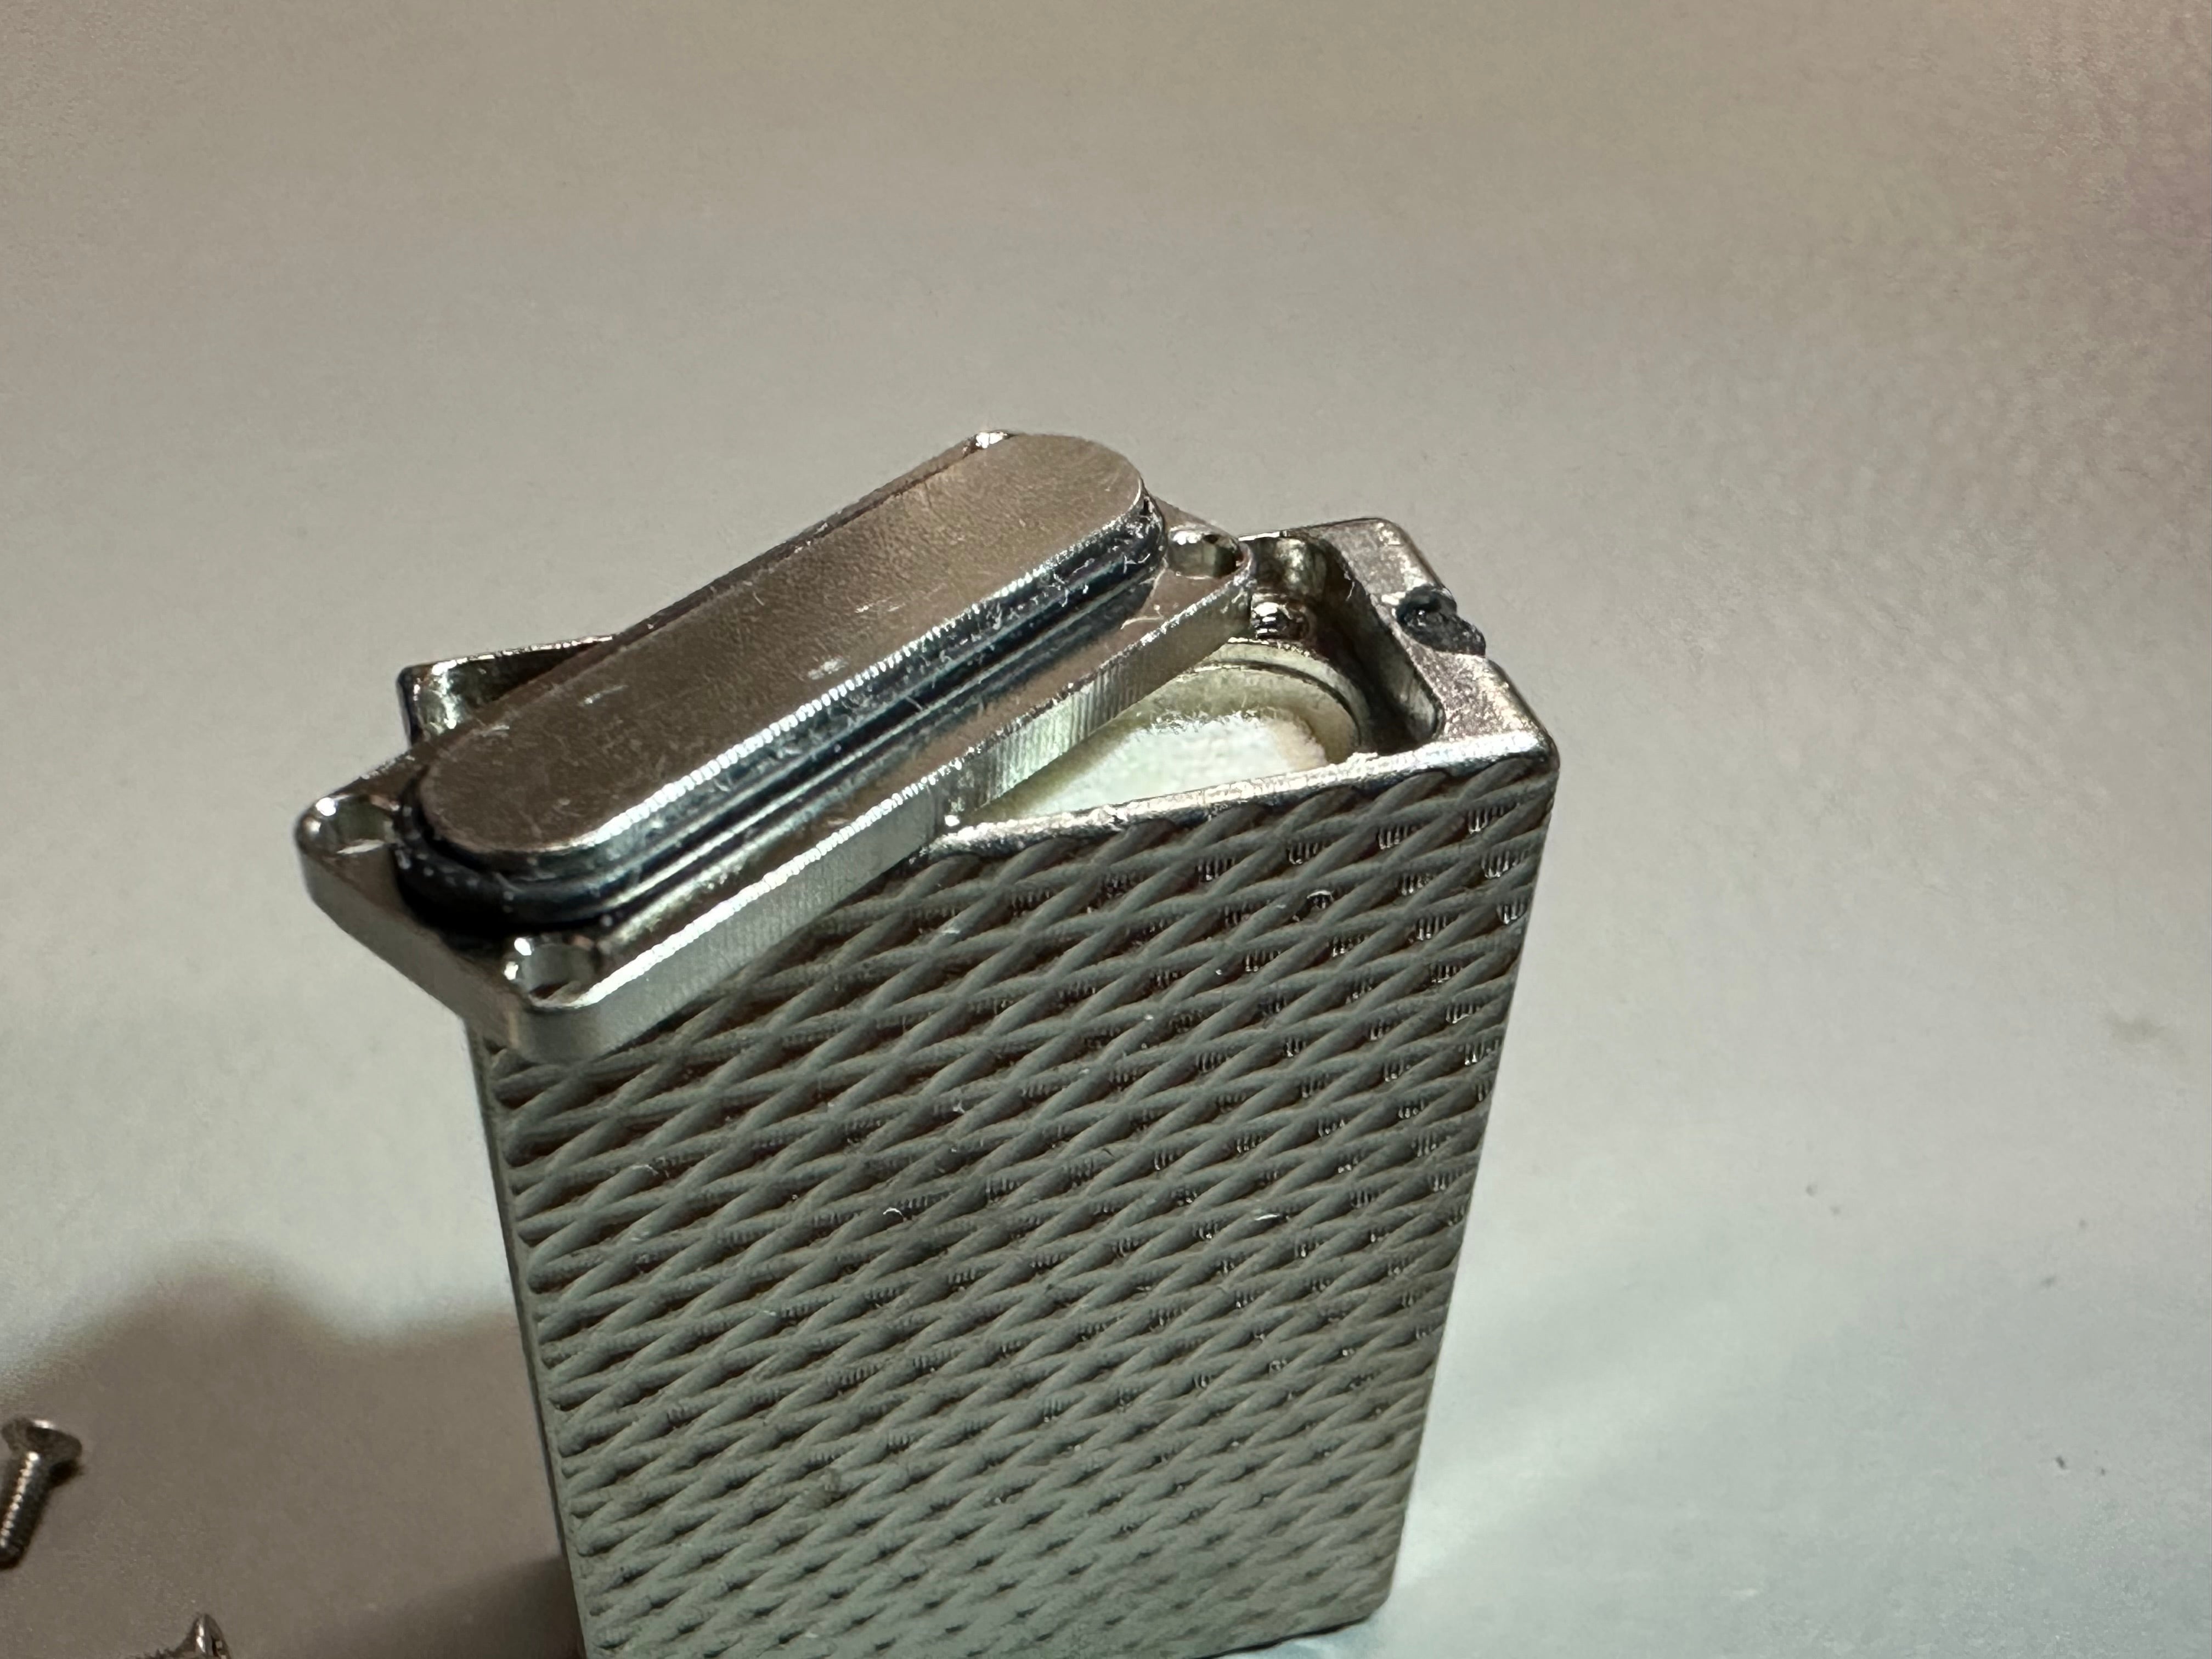 Flame Vault Match - Titanium Lighter by Maratac®